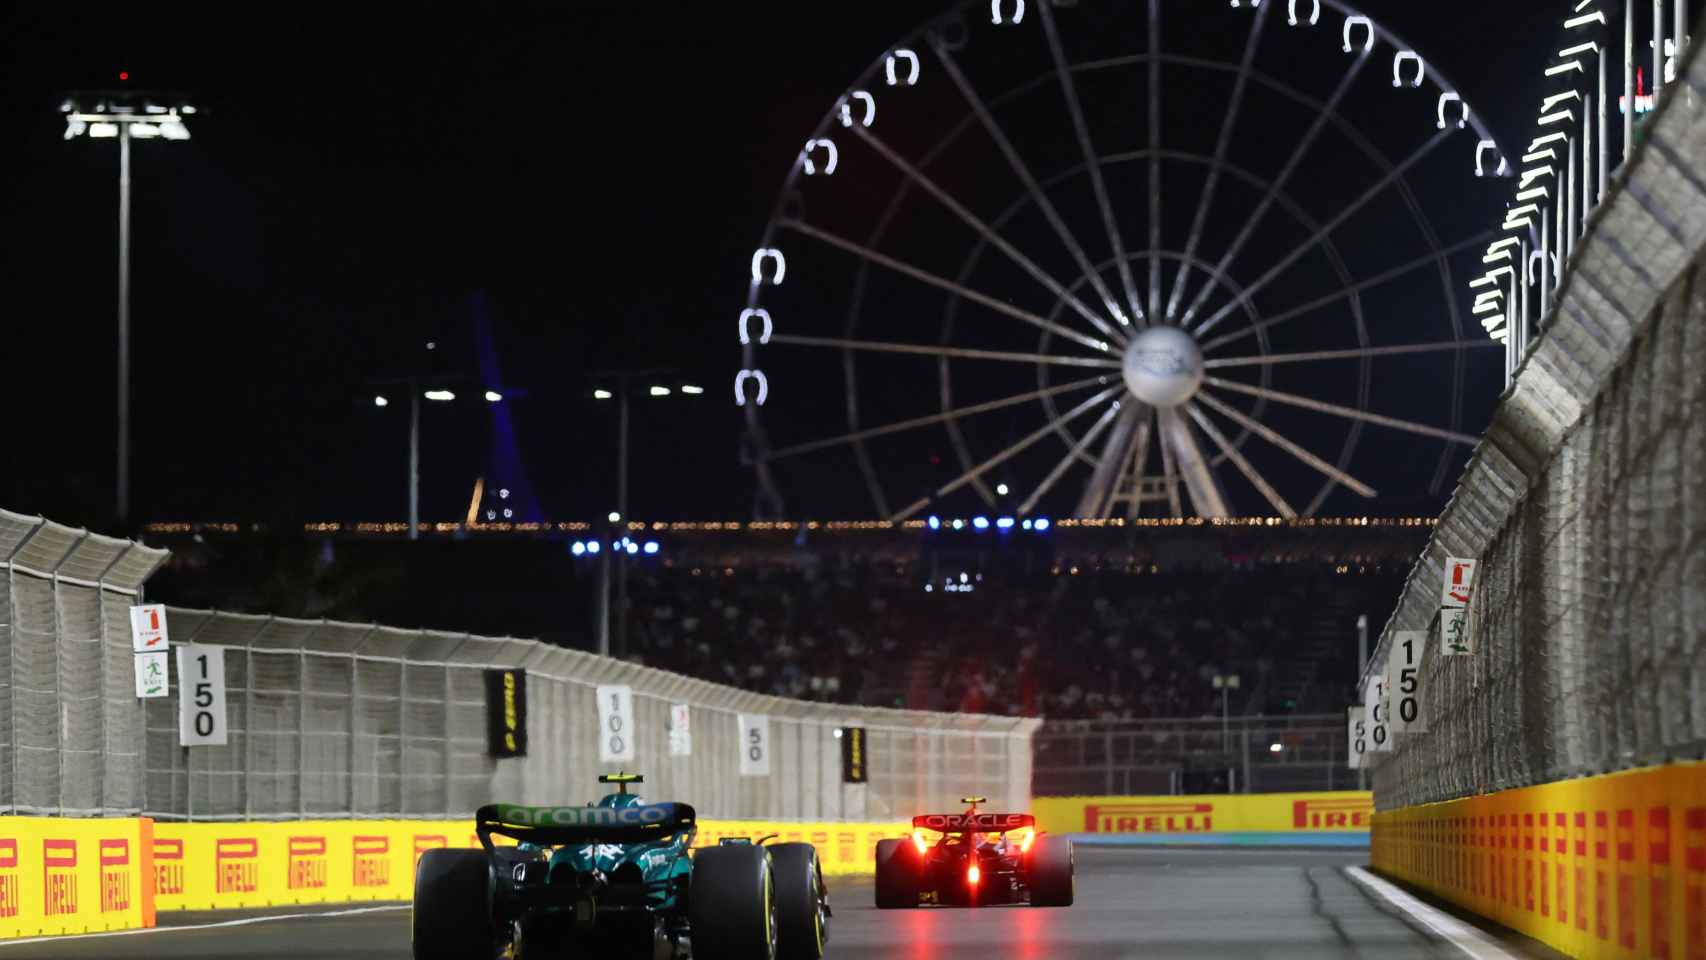 Increíble: Fernando Alonso pierde su podio 100 en F1 por una sanción de 10  segundos en Arabia Saudí